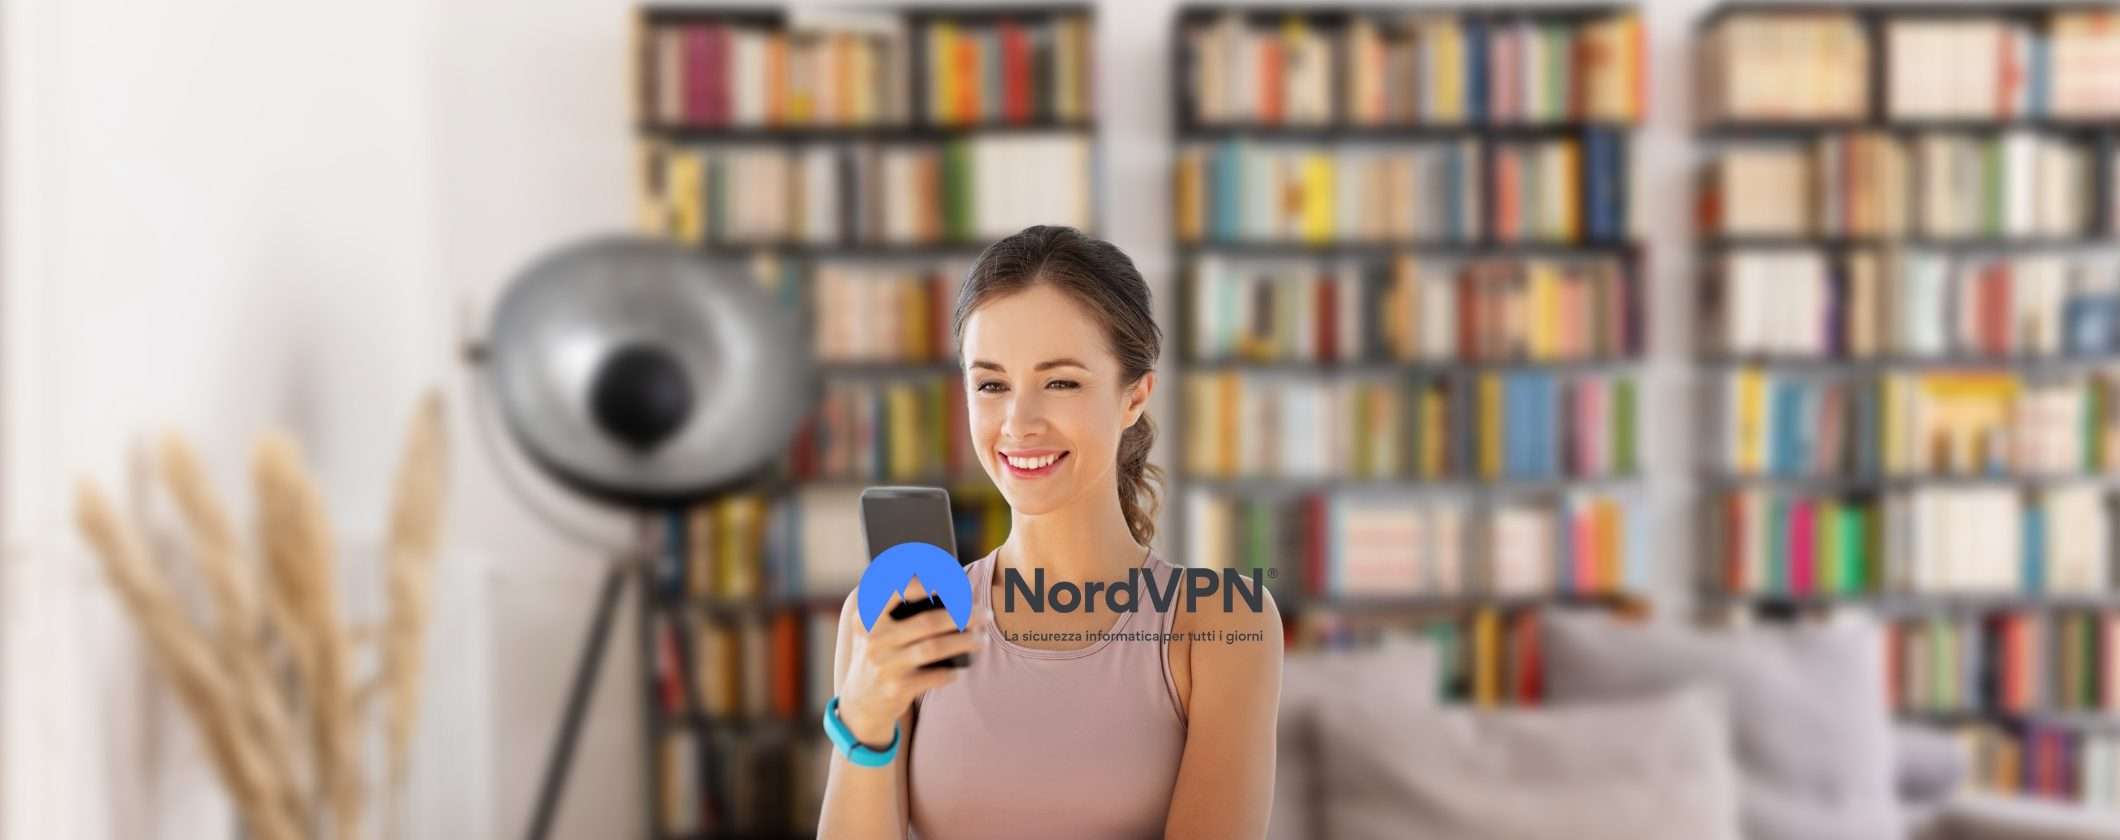 NordVPN: scopri perché questa VPN è davvero speciale